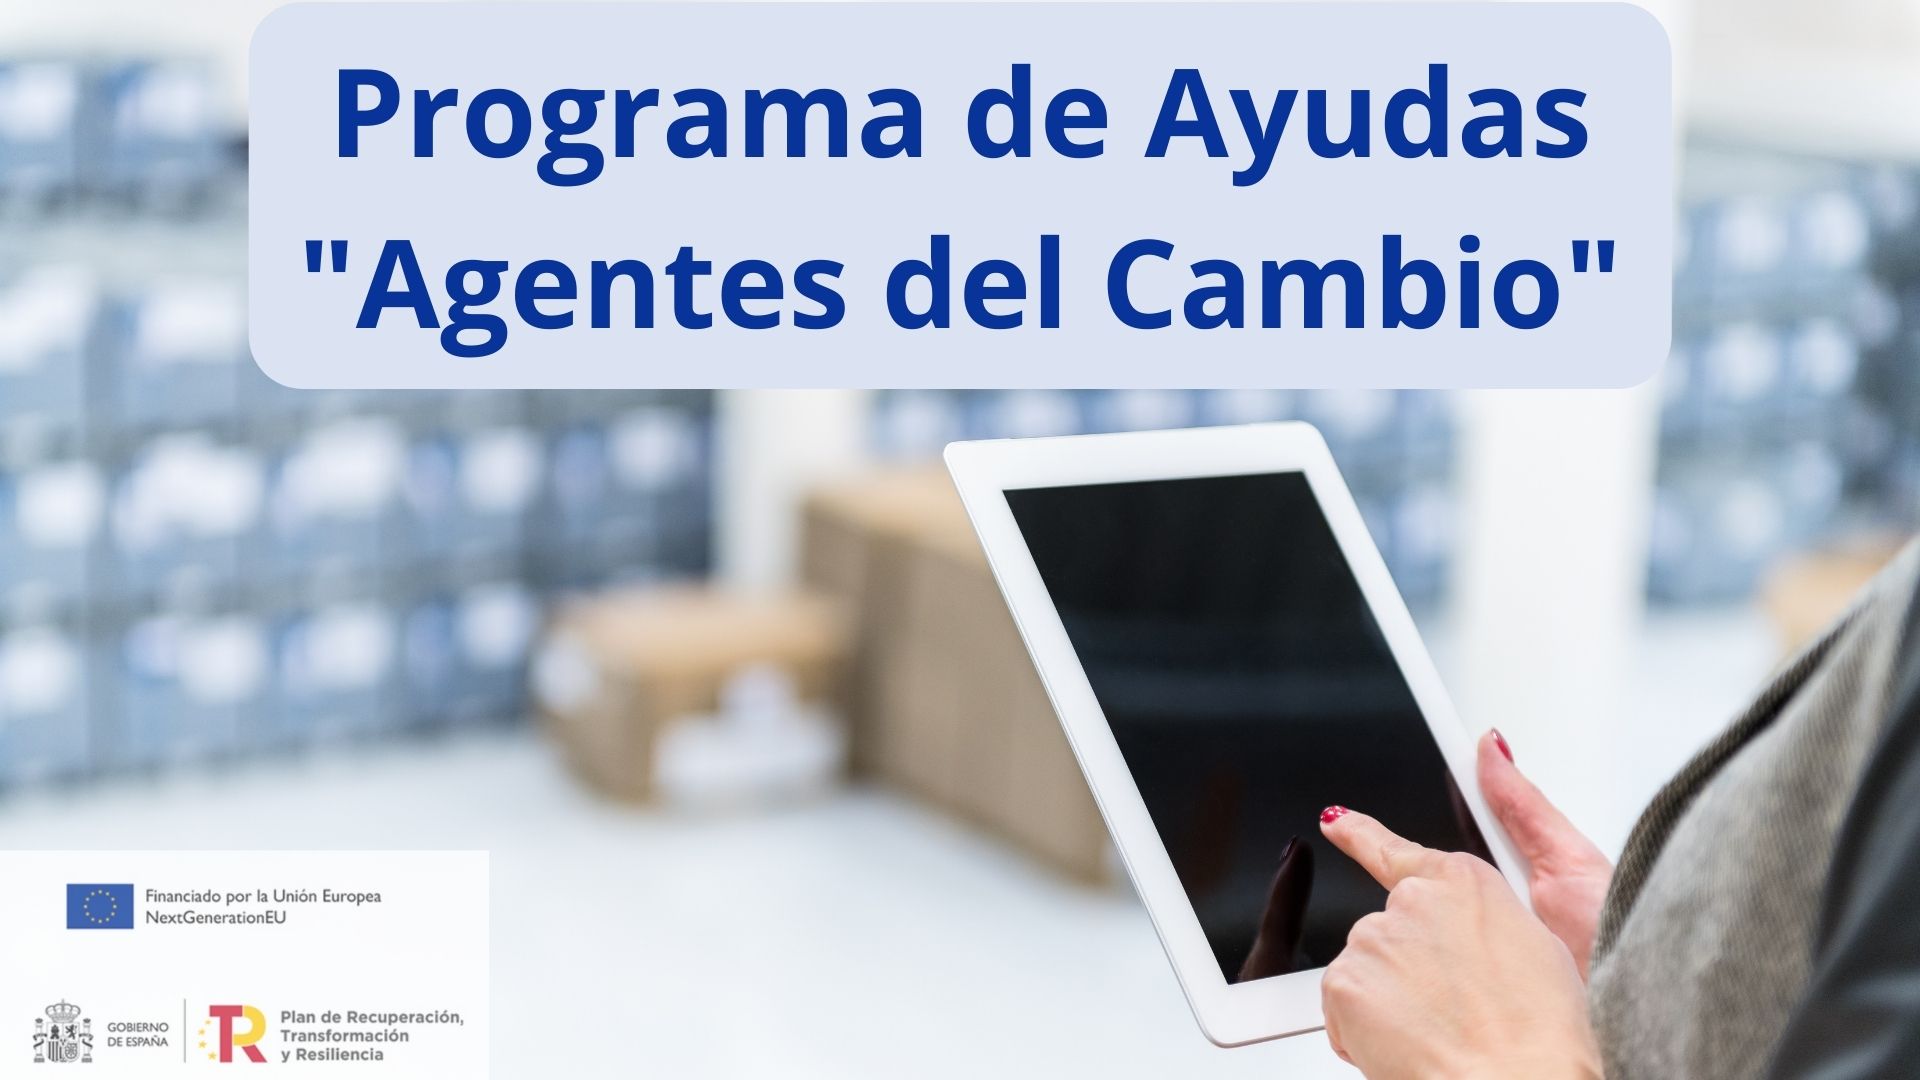 Programas de Ayudas | Agentes del Cambio | Oficina Acelera Pyme | Cámara de Comercio de Murcia